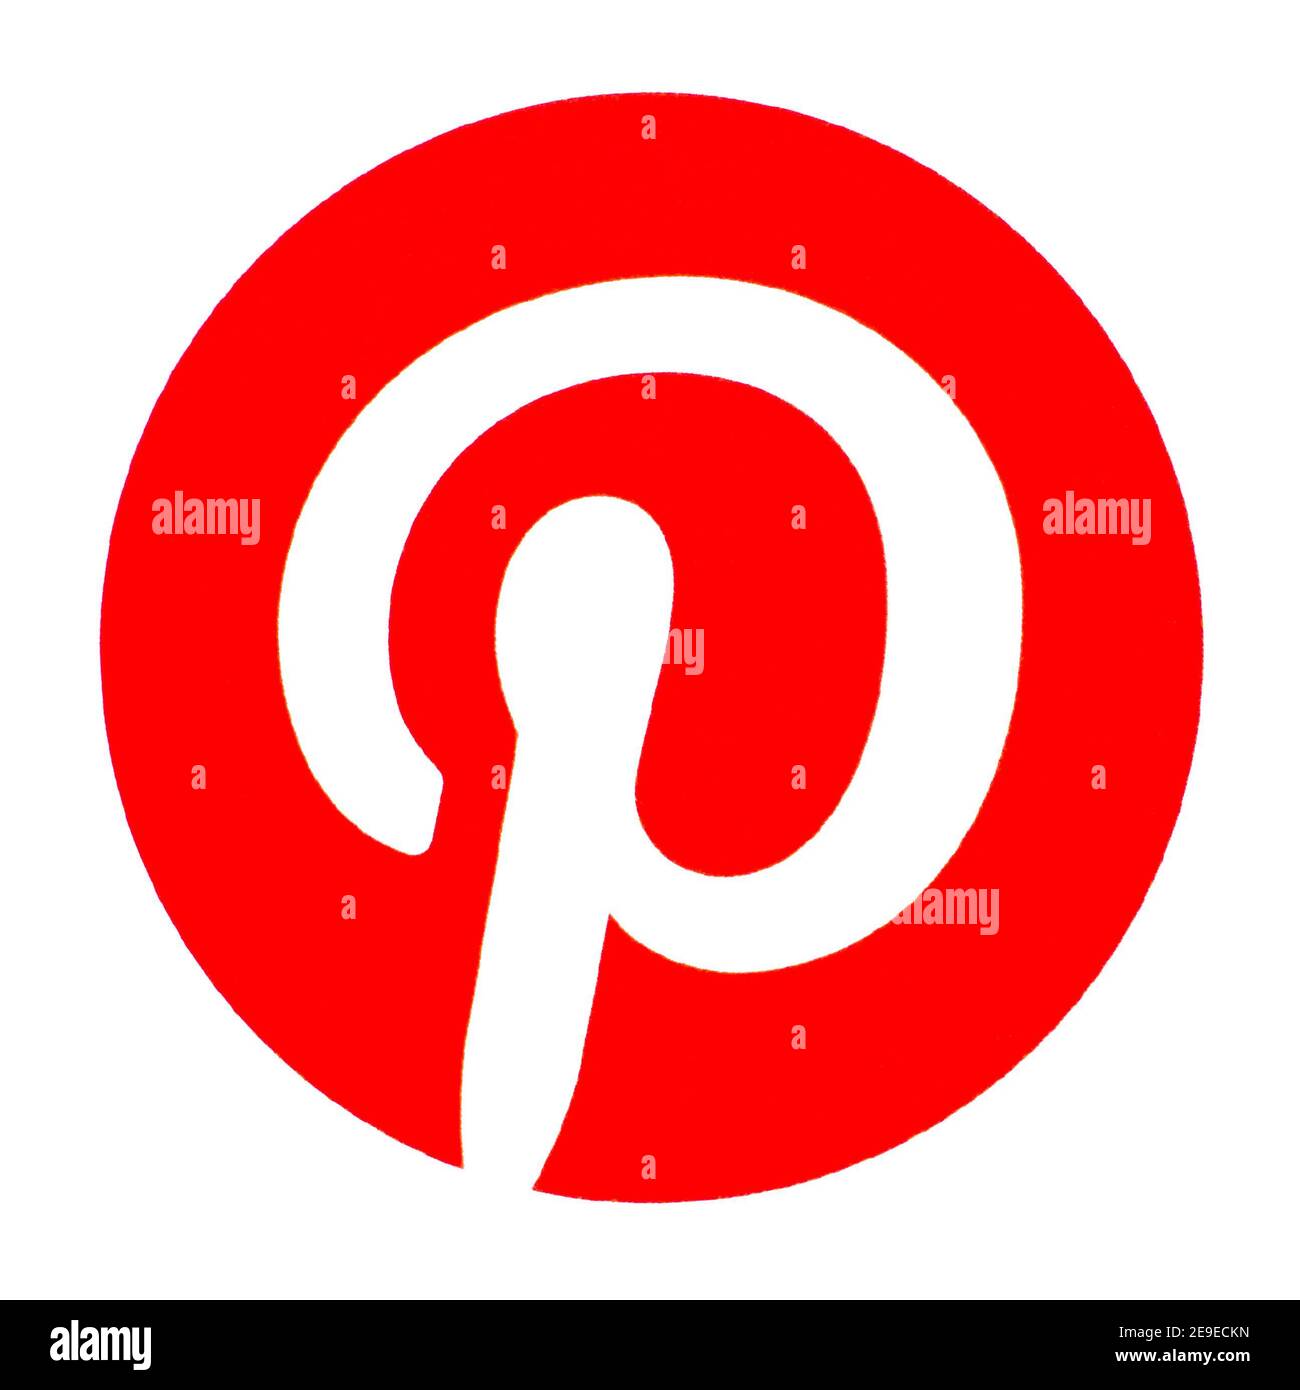 Pinterest-Logo auf Papier gedruckt. Pinterest ist ein Unternehmen für Web- und mobile Anwendungen, das eine gleichnamige Foto-Sharing-Website betreibt Stockfoto